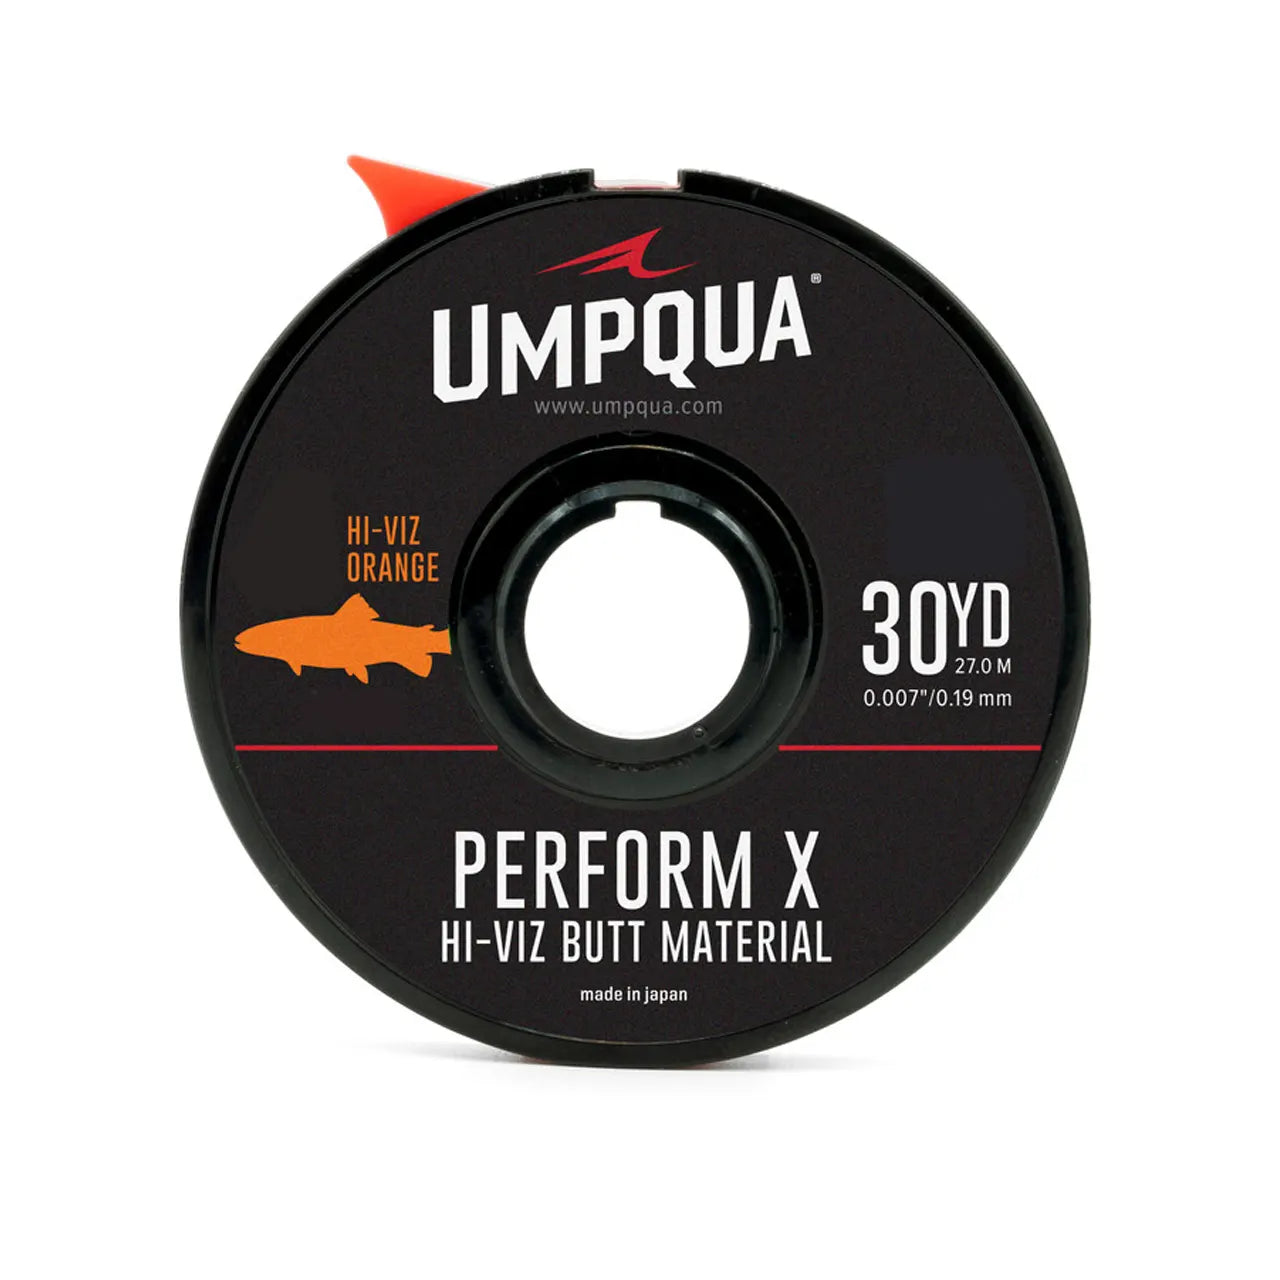 Umpqua HI-VIZ Euro Butt Material